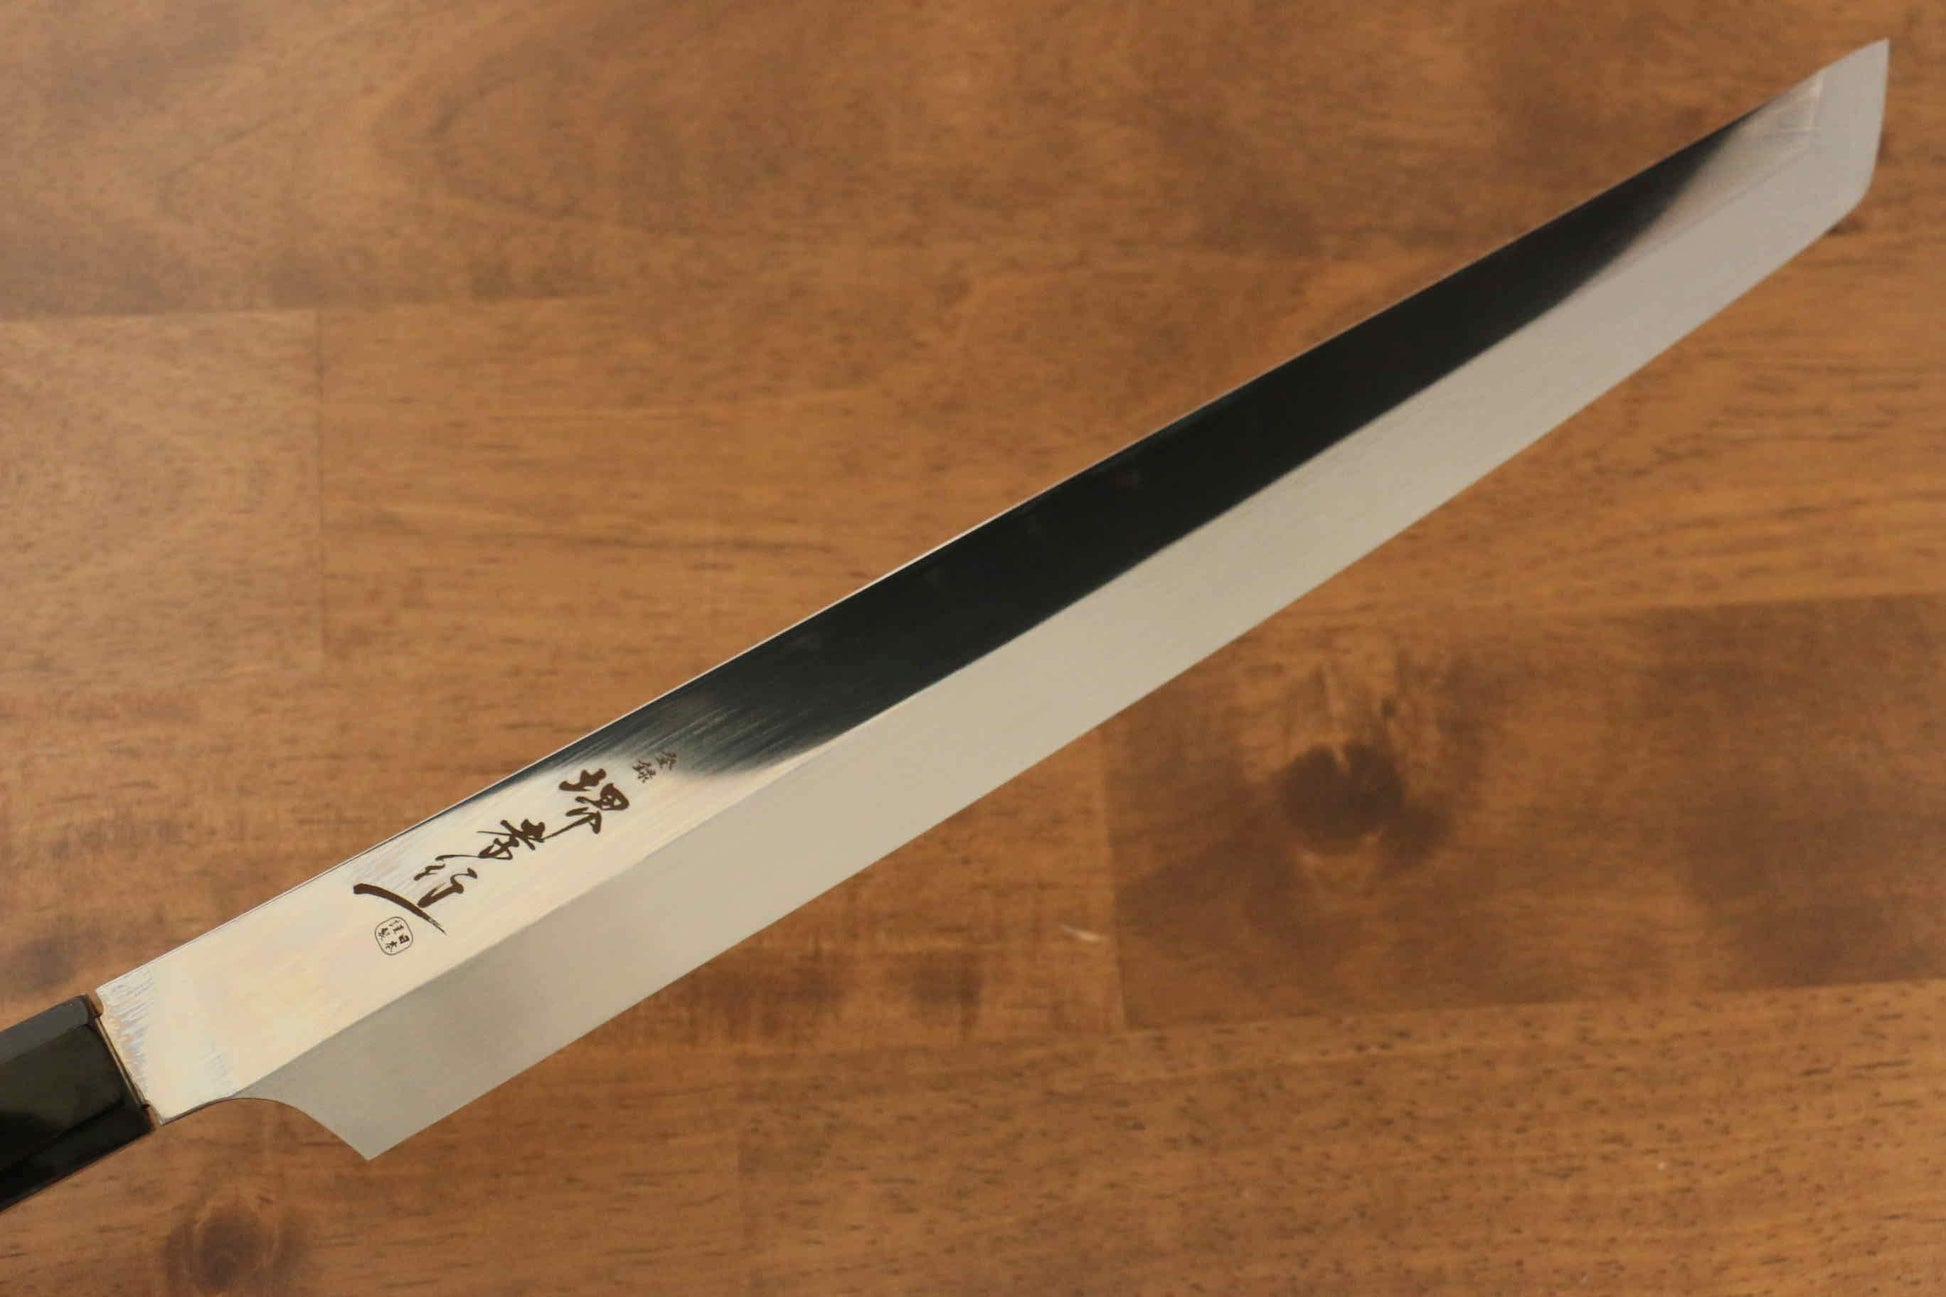 Sakai Takayuki Ginryu Honyaki Swedish Steel Mirrored Finish Sakimaru Yanagiba Japanese Knife 300mm Wenge with Double Water Buffalo Ring Handle with Sheath - Japanny - Best Japanese Knife